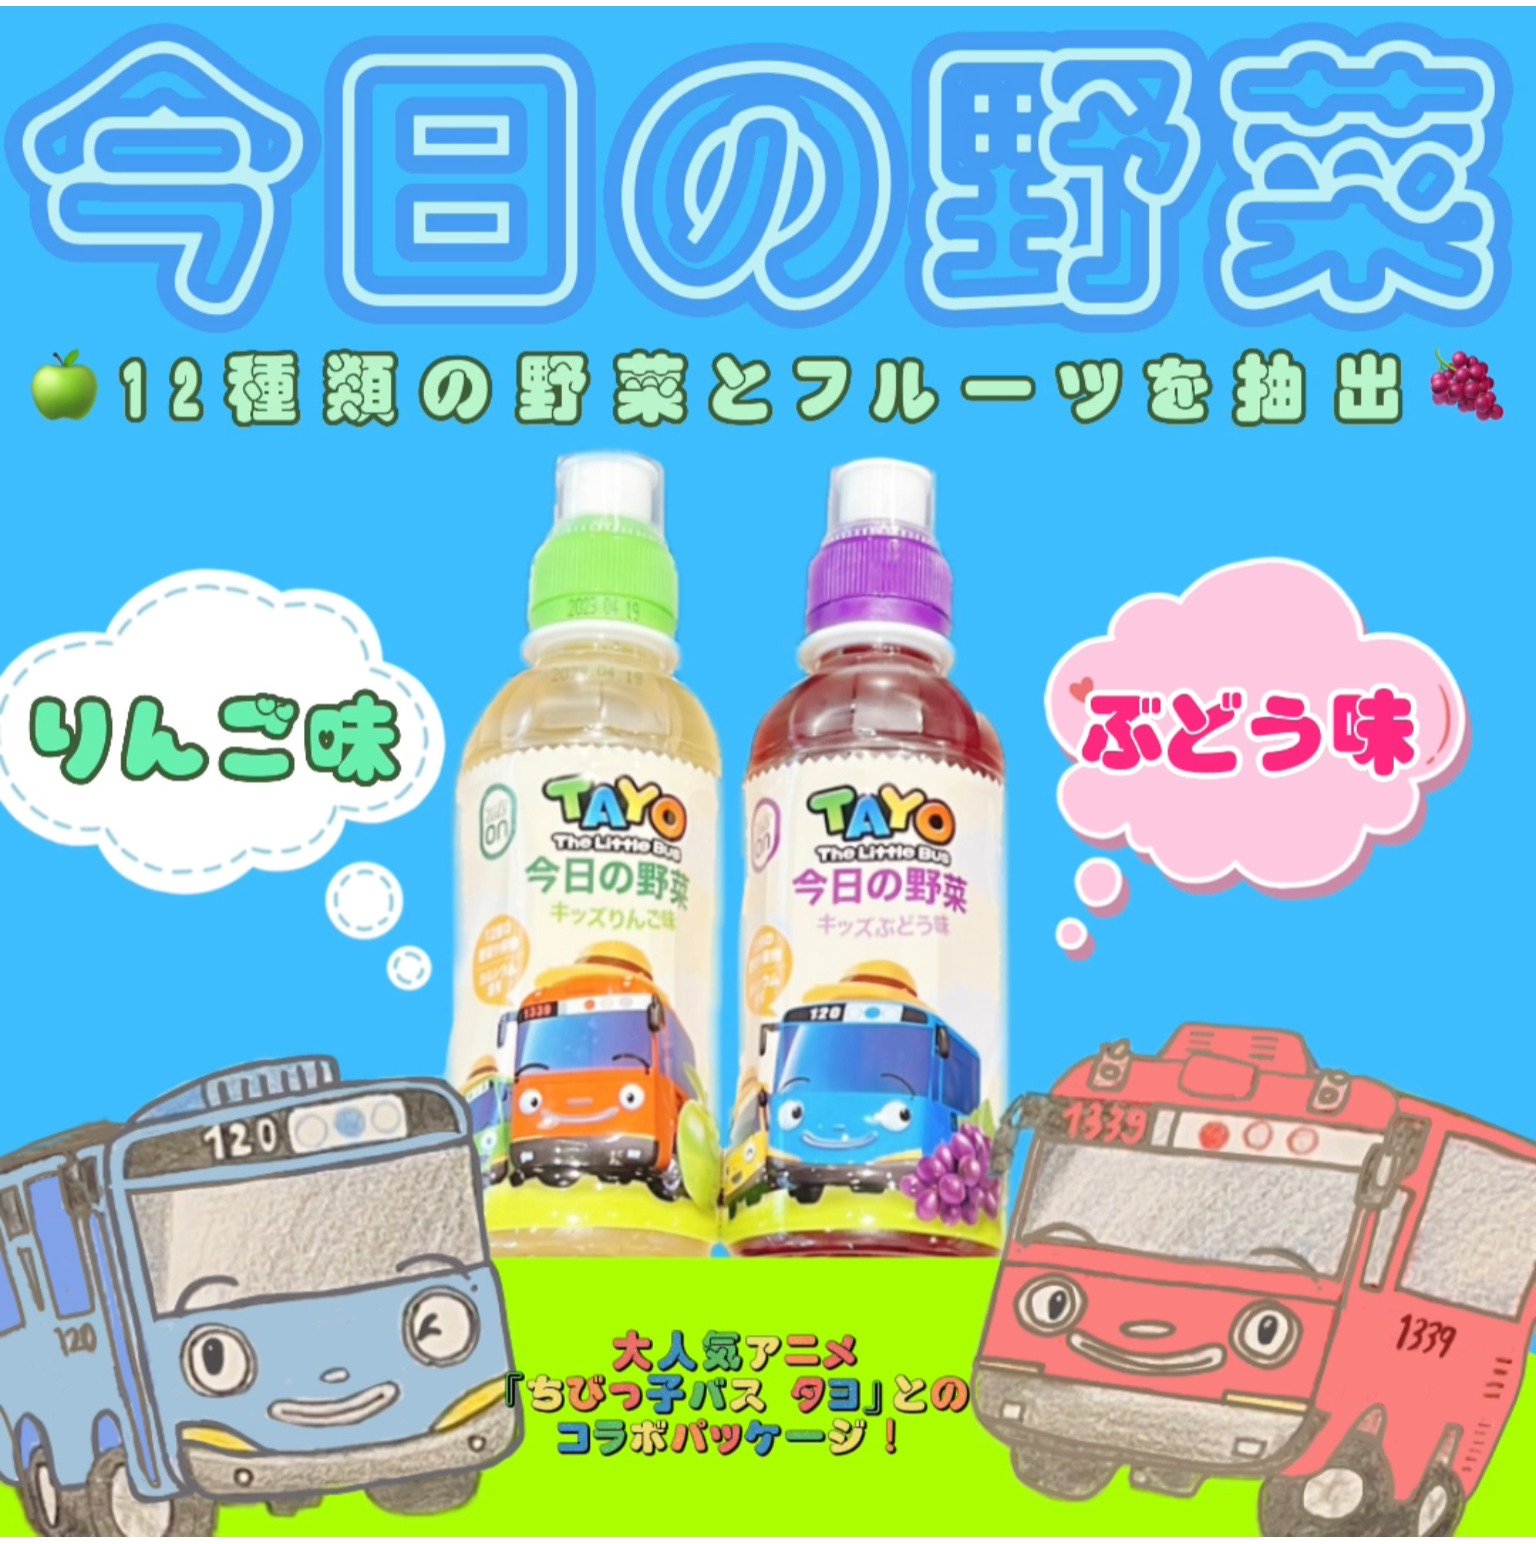 【新商品】ちびっこバス タヨ「今日の野菜」ジュースが入荷致しました🥬🍇🍏 